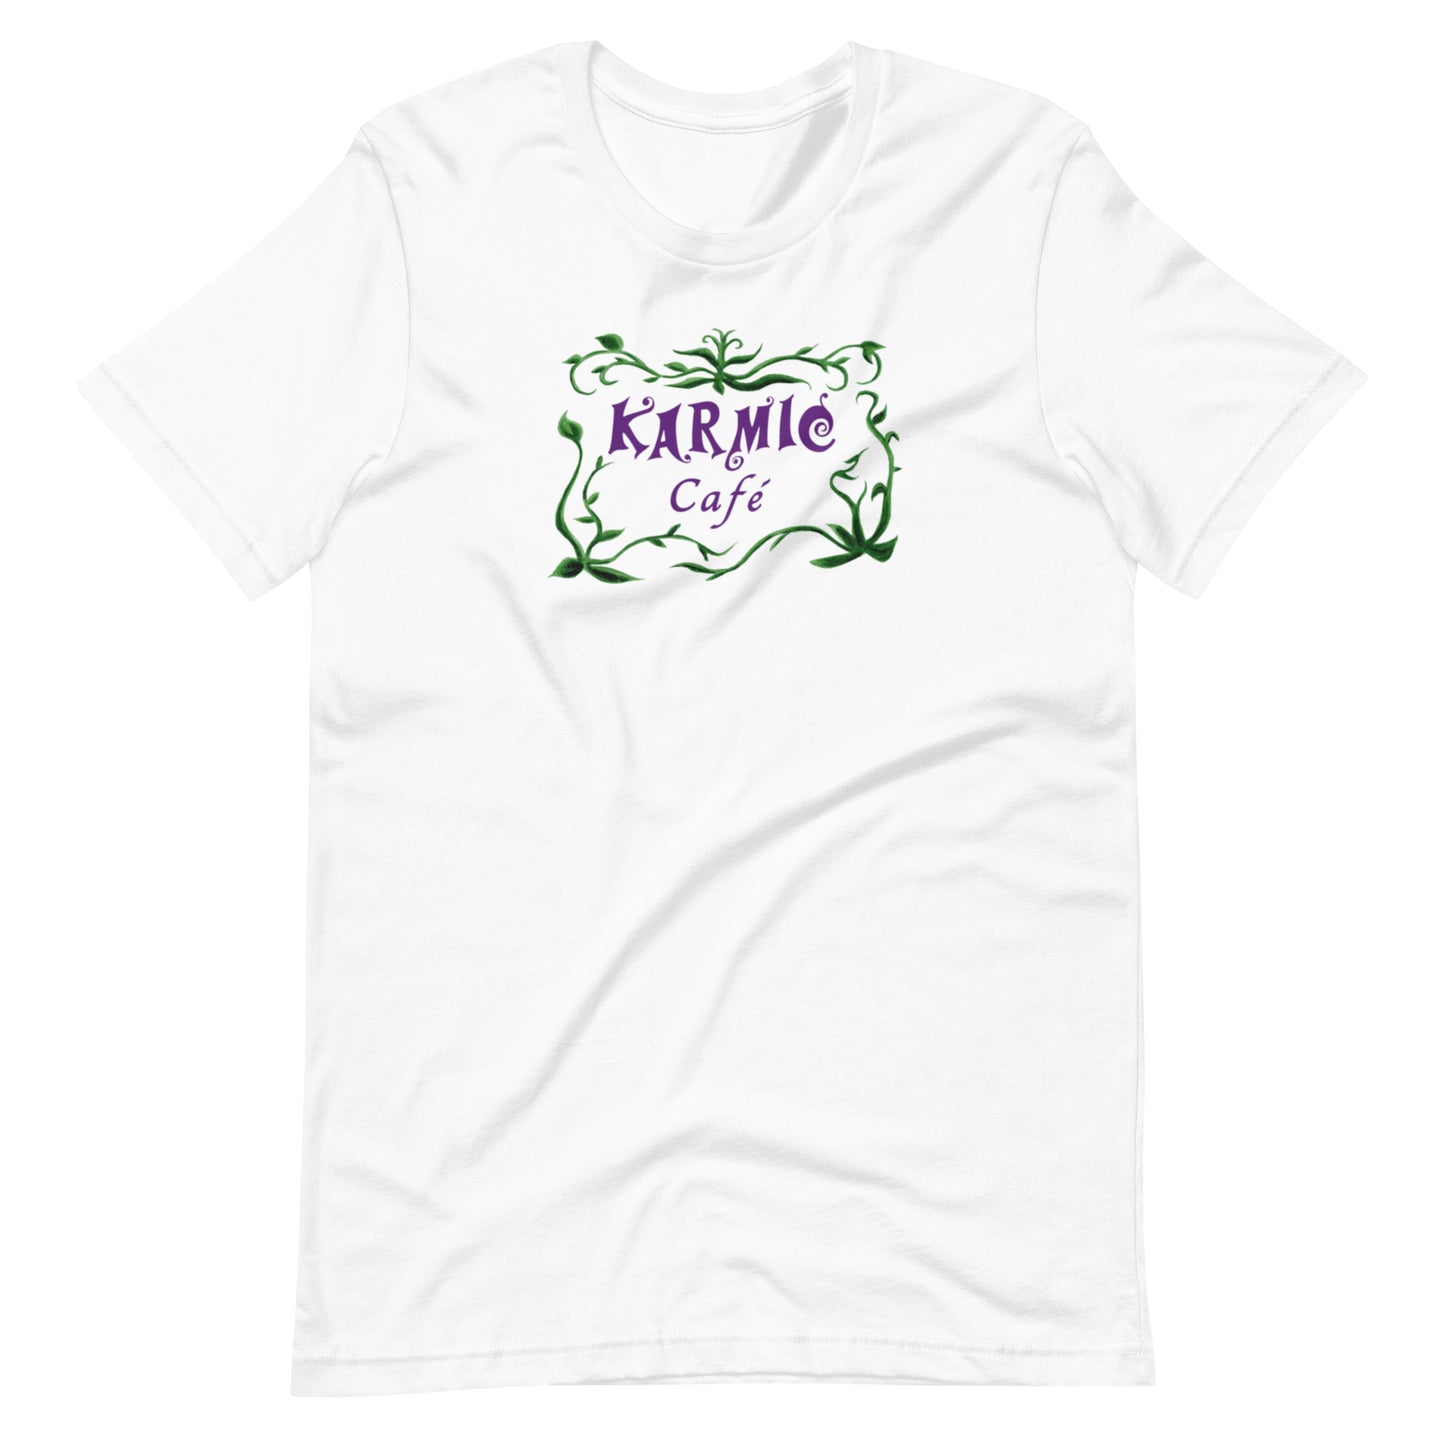 Super Comfy Fat Cat-Karmic Cafe T-shirt (white short-sleeved)